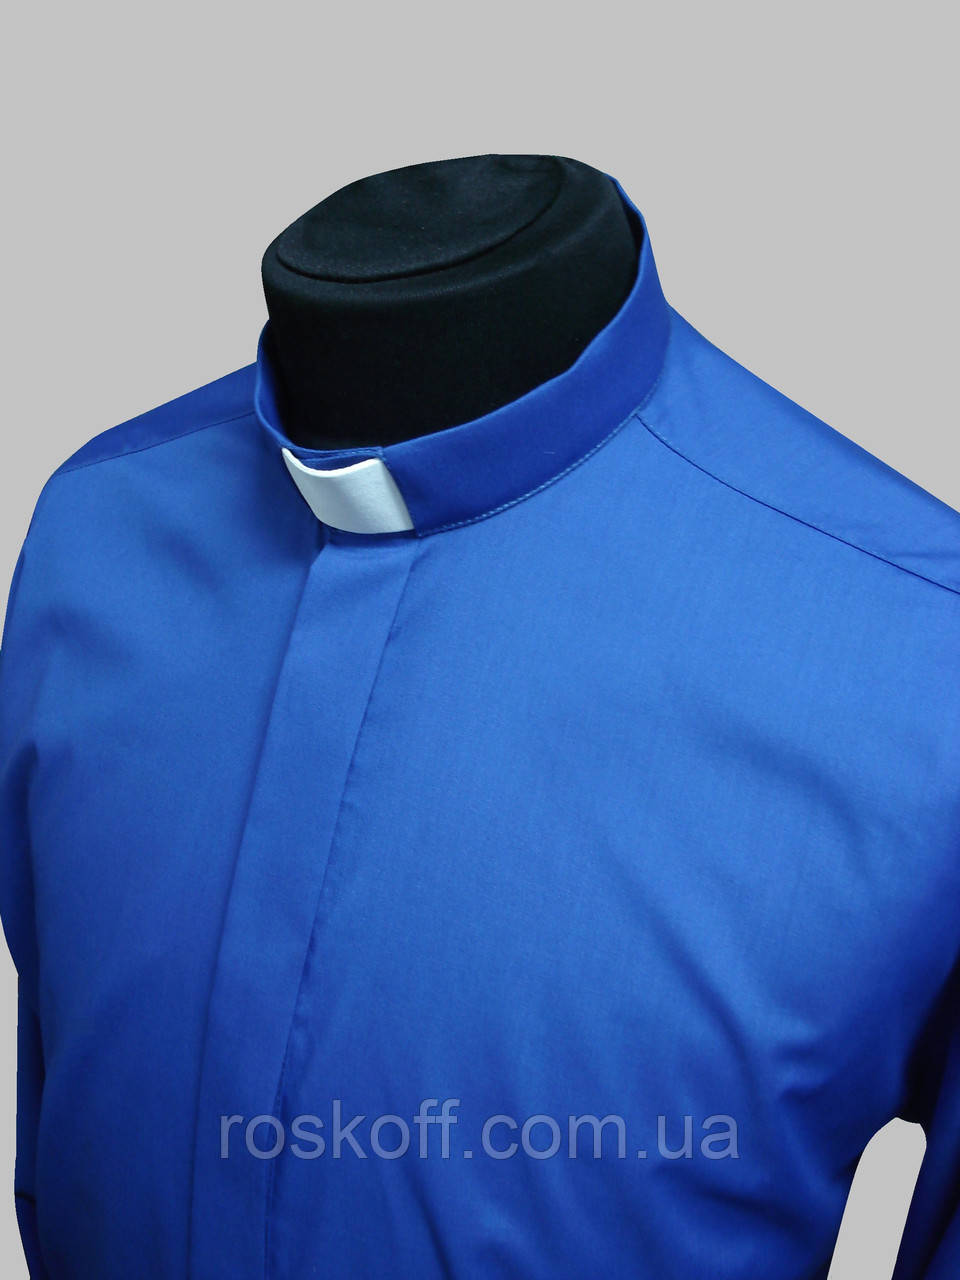 Рубашка для священников синего цвета с коротким рукавом, Синий